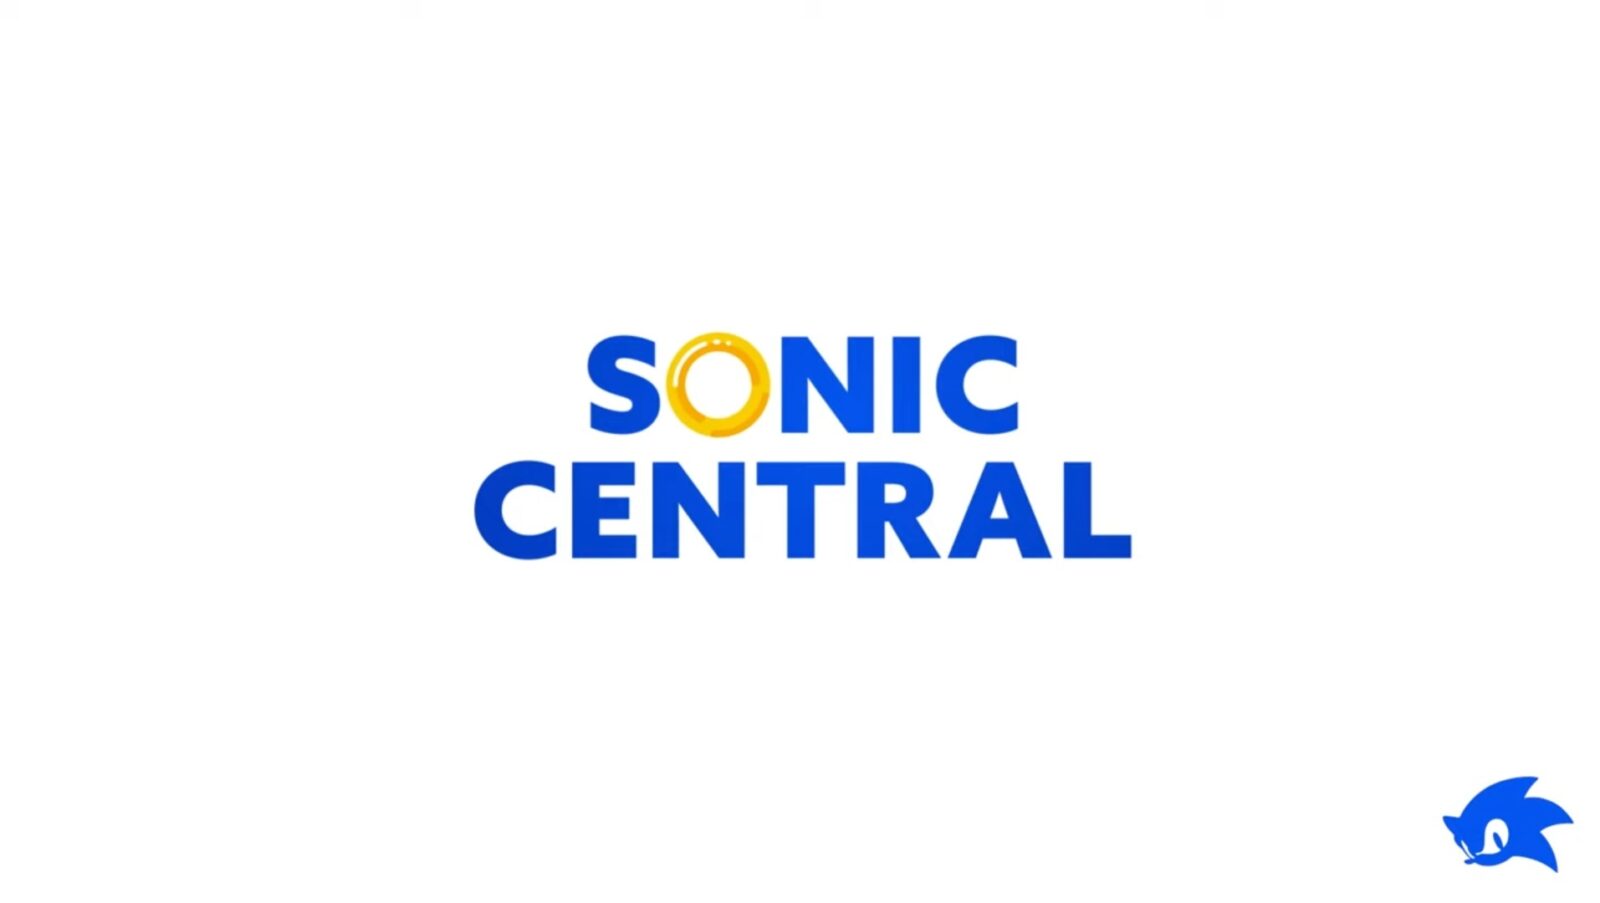 Tutto quello che devi sapere da Sonic Central